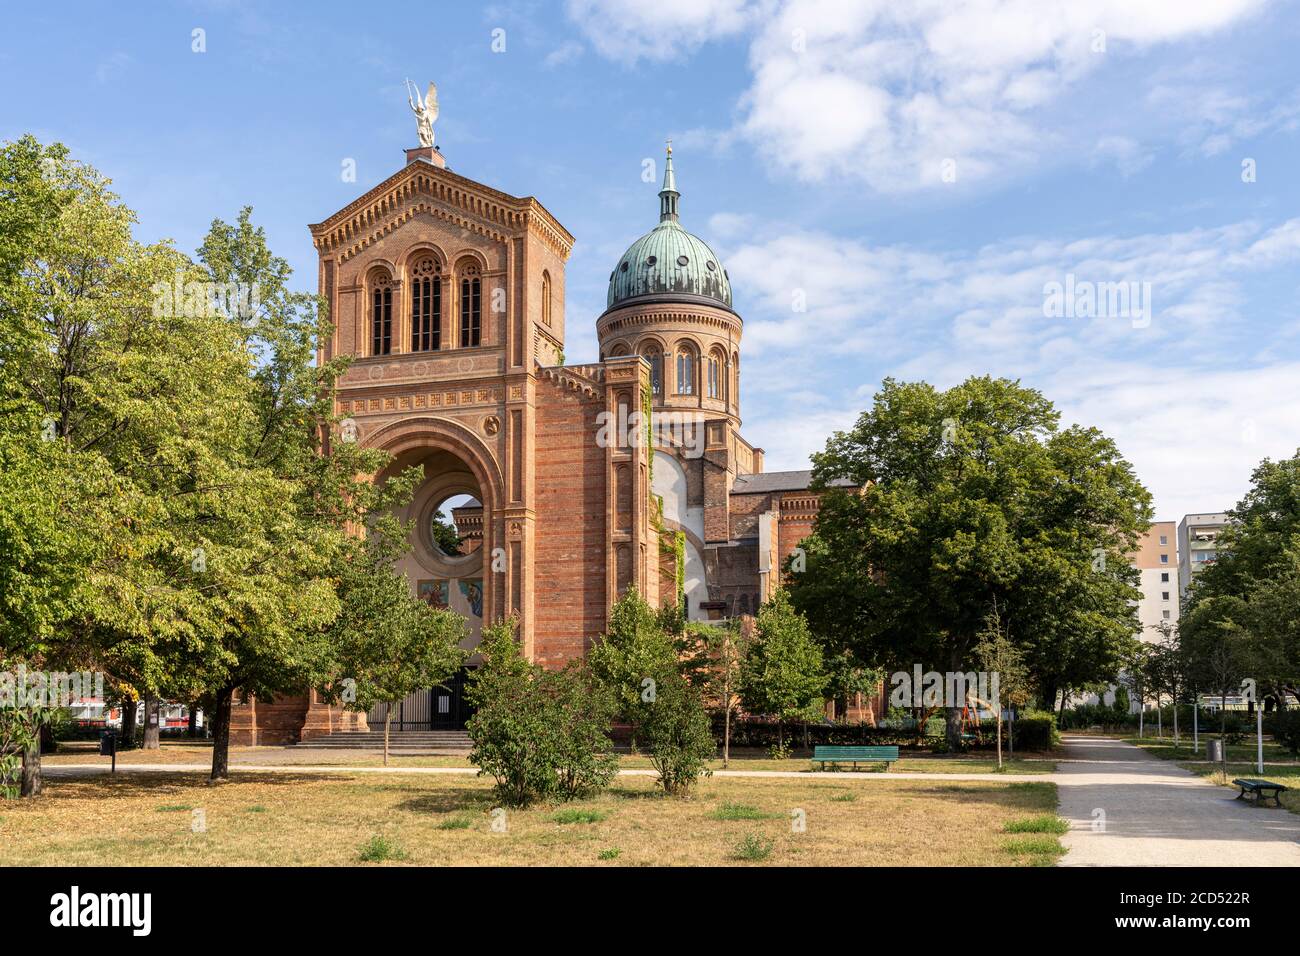 Chiesa di San Michele, conosciuta come Sankt-Michael-Kirche in tedesco, nel distretto di Mitte, Berlino, Germania Foto Stock